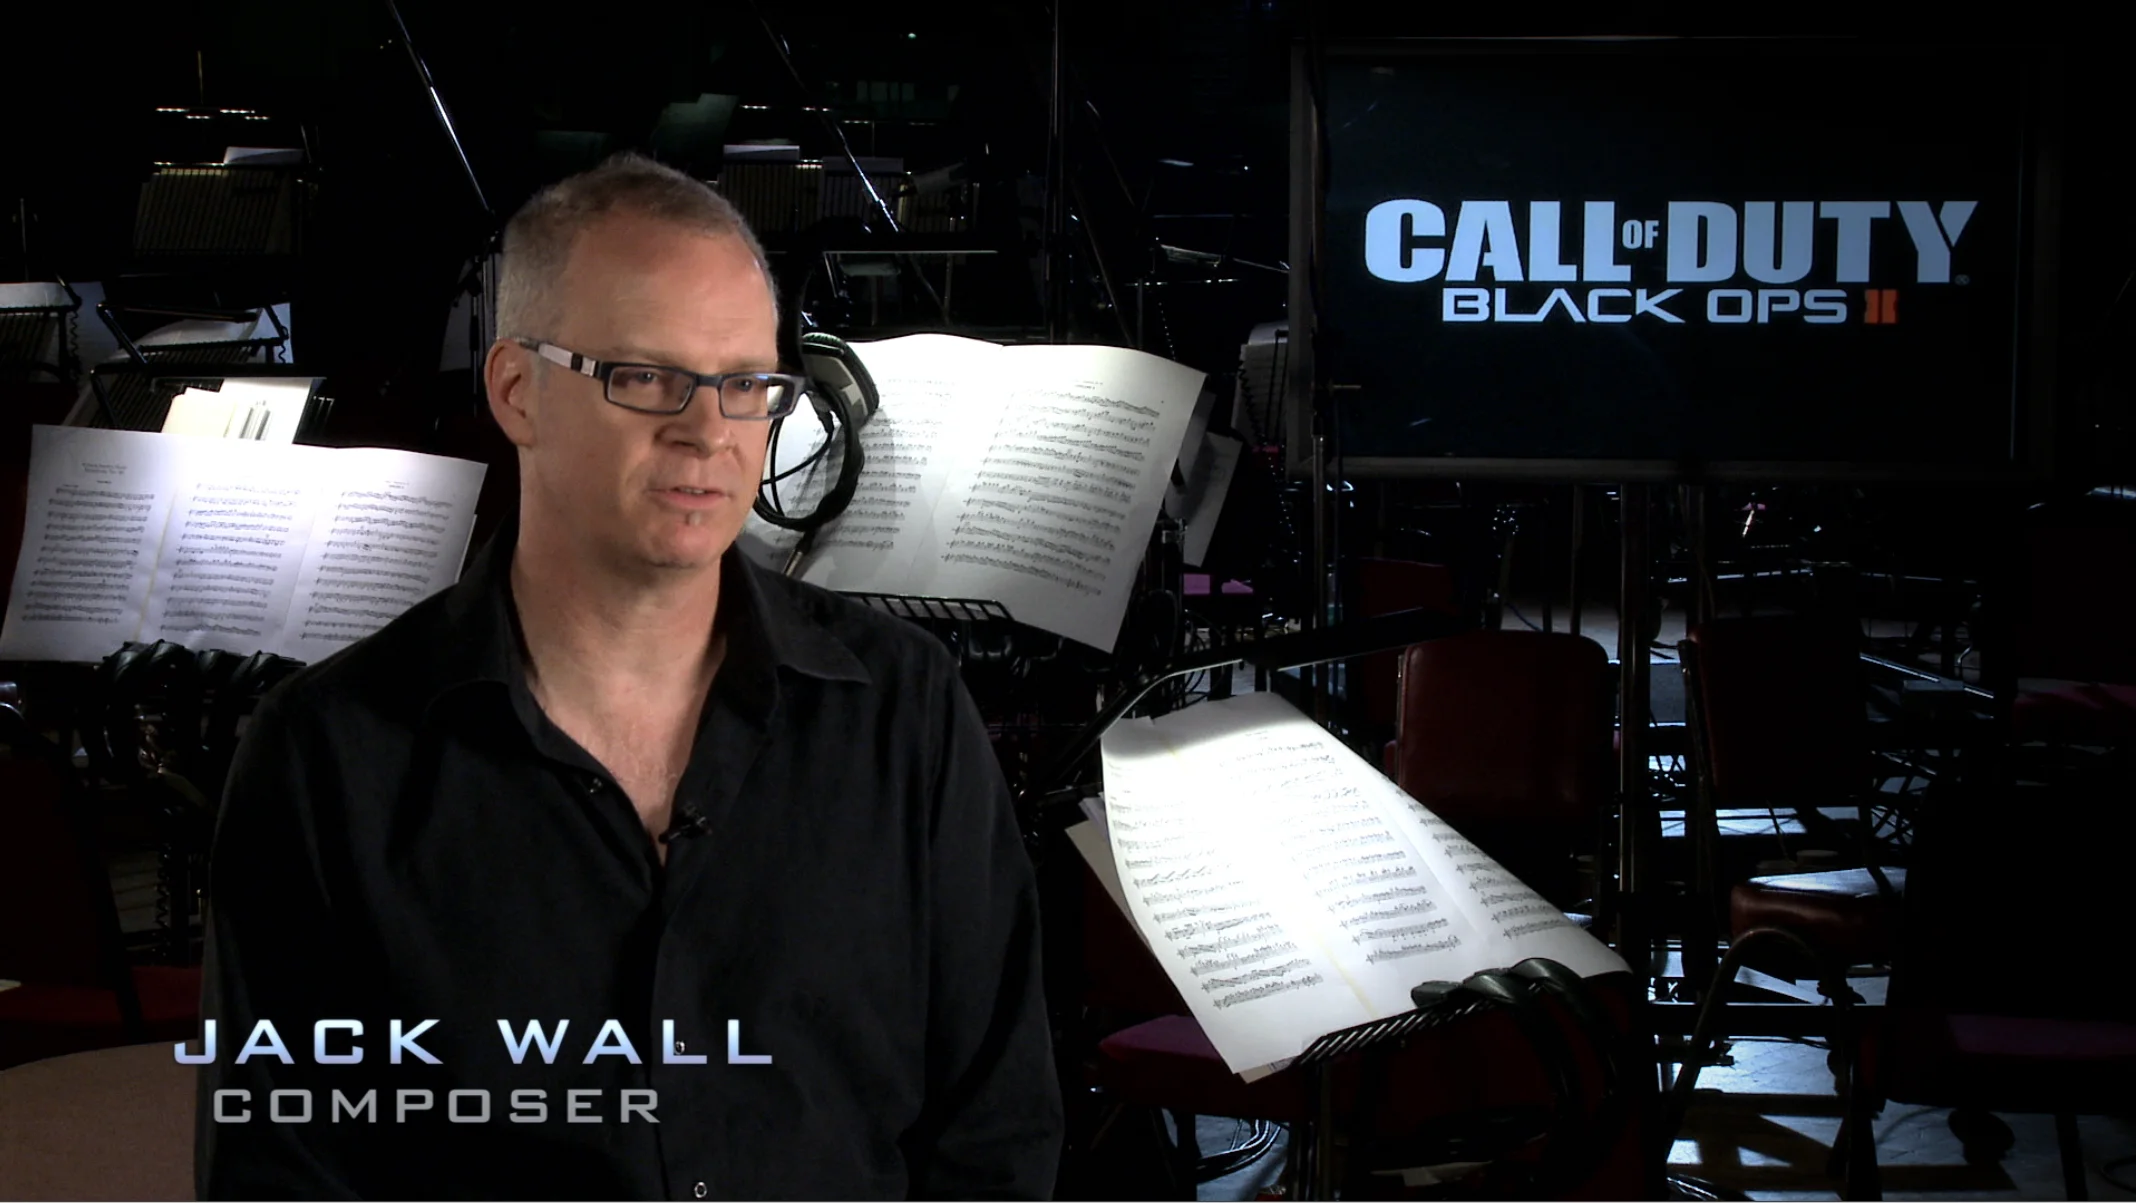 ## Джек Уолл

Американский композитор, прославившийся в игровой индустрии благодаря работе с квестовым сериалом Myst. Автор музыки для Mass Effect, Lost Planet 3 и Call of Duty: Black Ops 2.